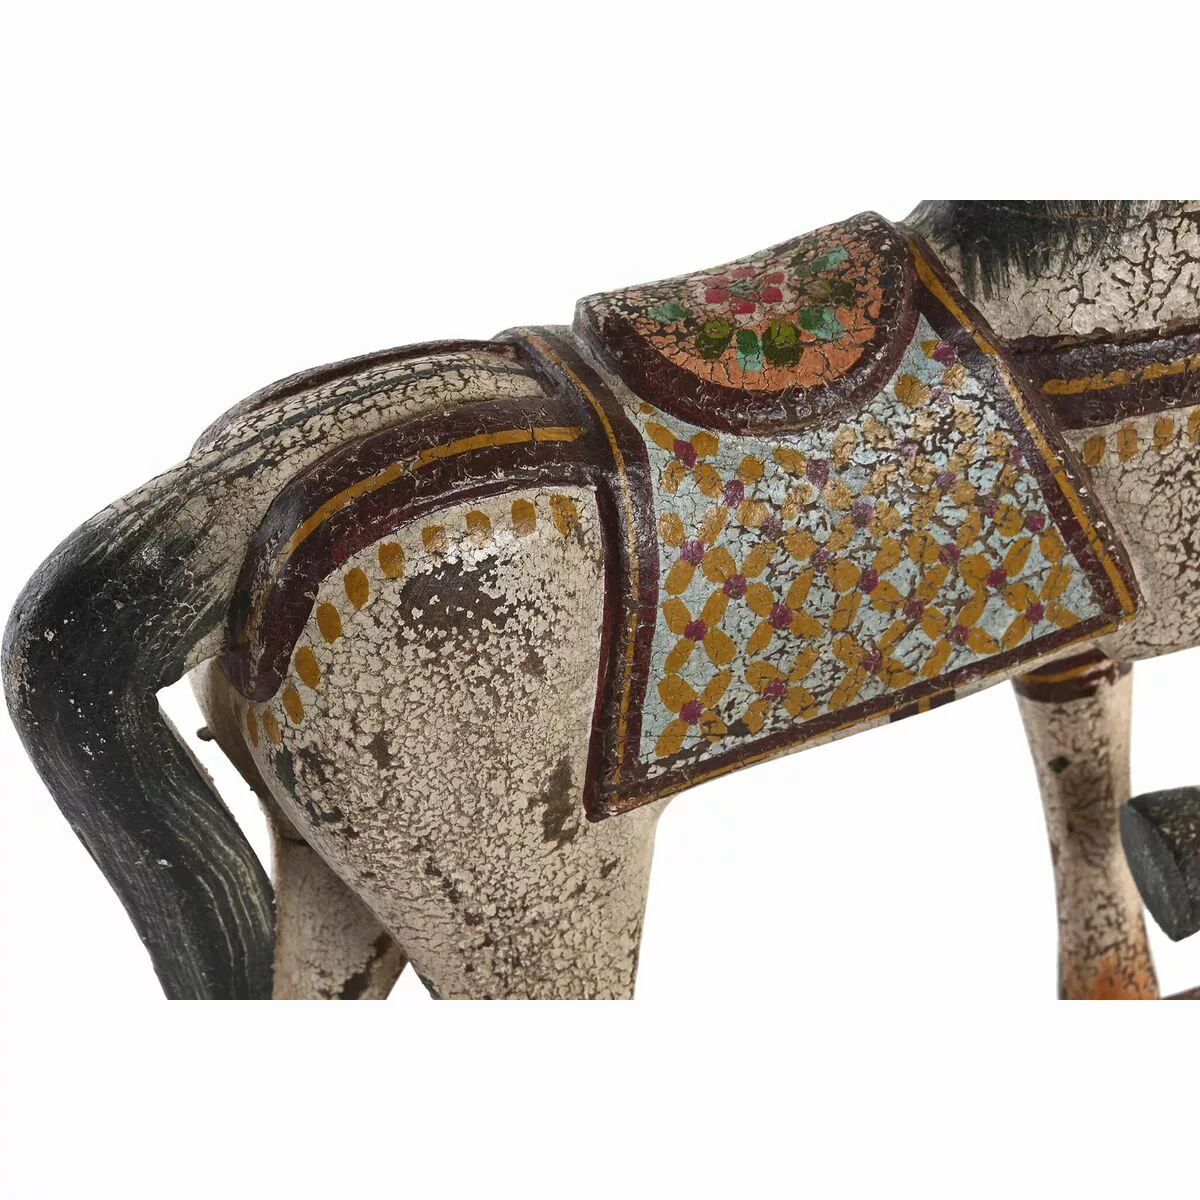 Deko-figur Dkd Home Decor Pferd Eisen Mango-holz (35 X 10 X 42 Cm) günstig online kaufen